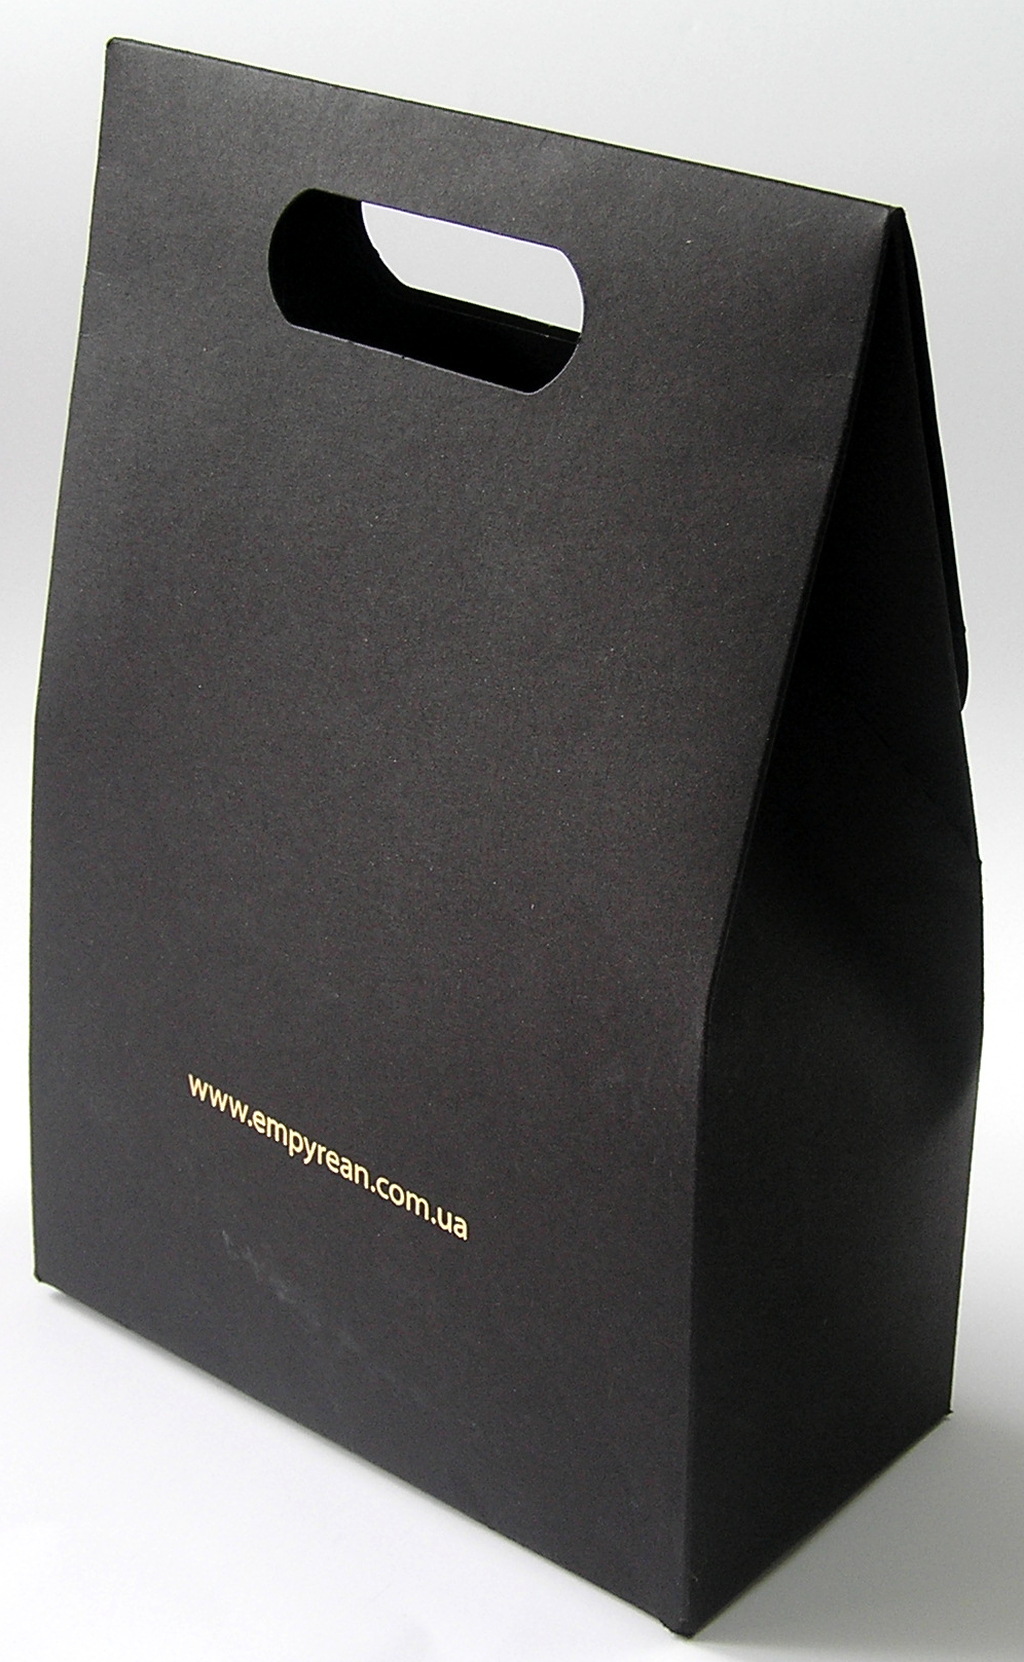 Изготовление упаковки «Empyrean». Полиграфия типографии Макрос, изготовление упаковки, спецификация 971990-4